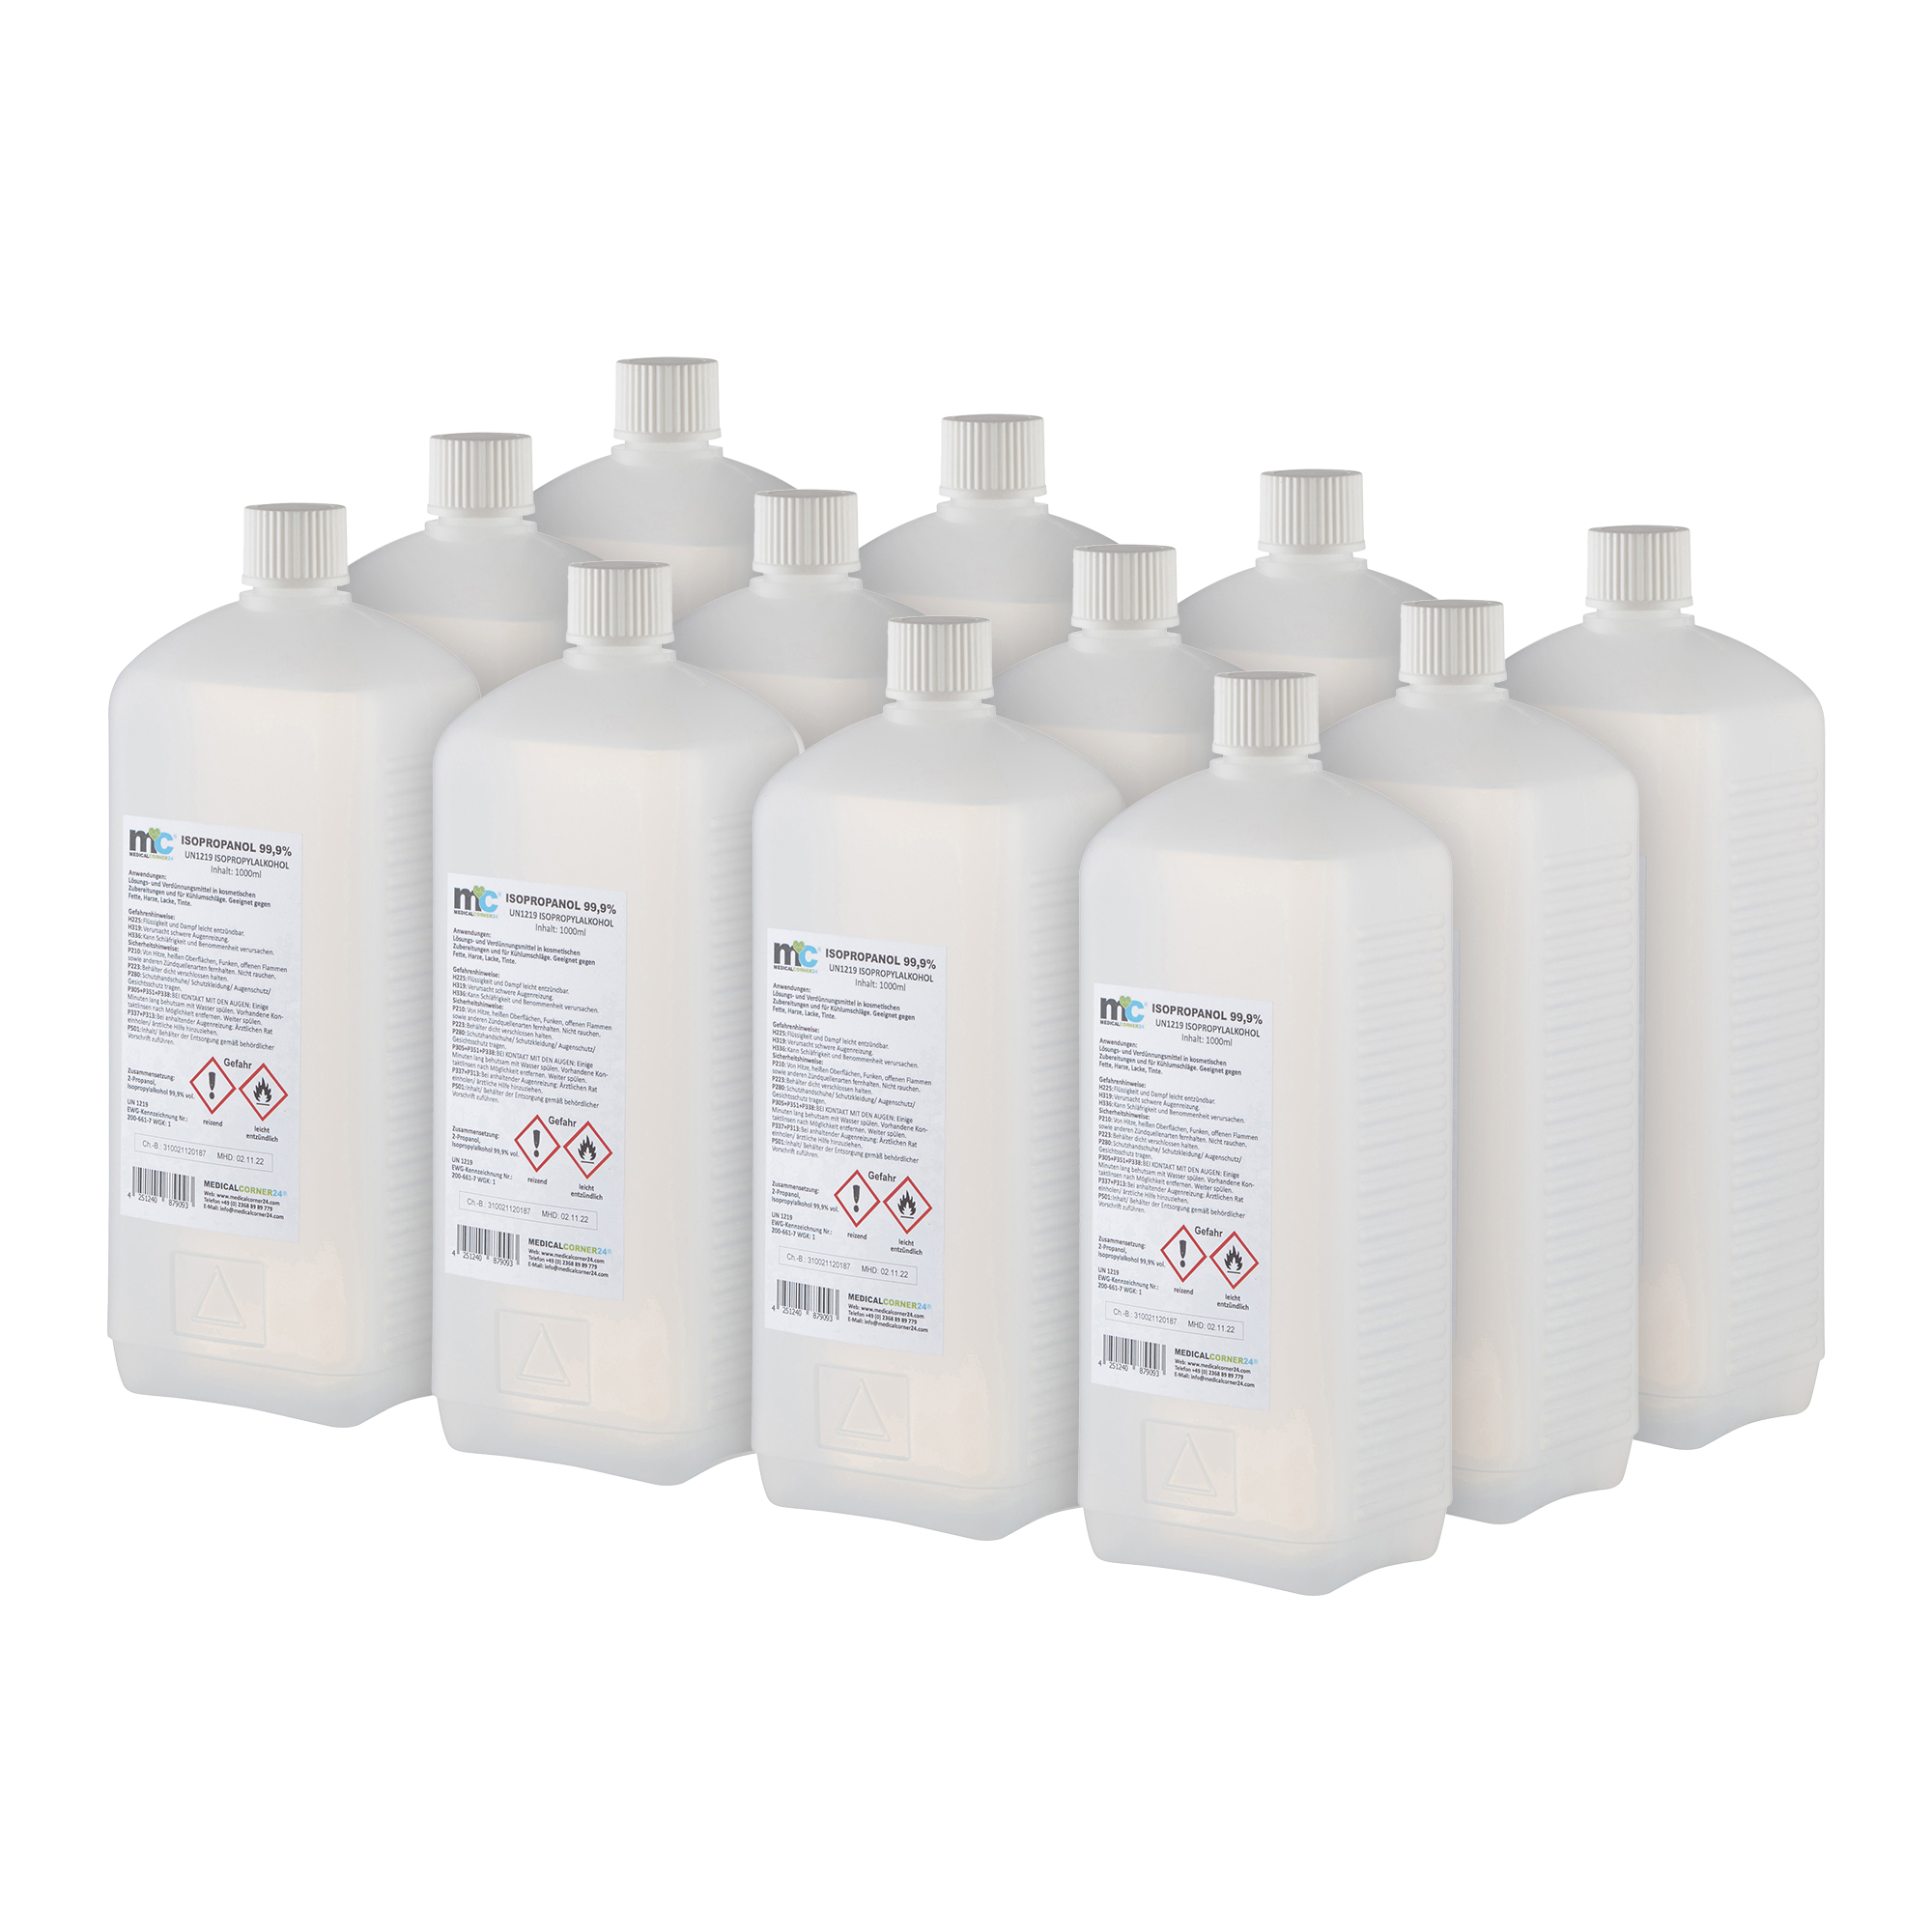 Isopropanol 99,9 %, Isopropylalkohol, Reinigung, 12x1 Liter